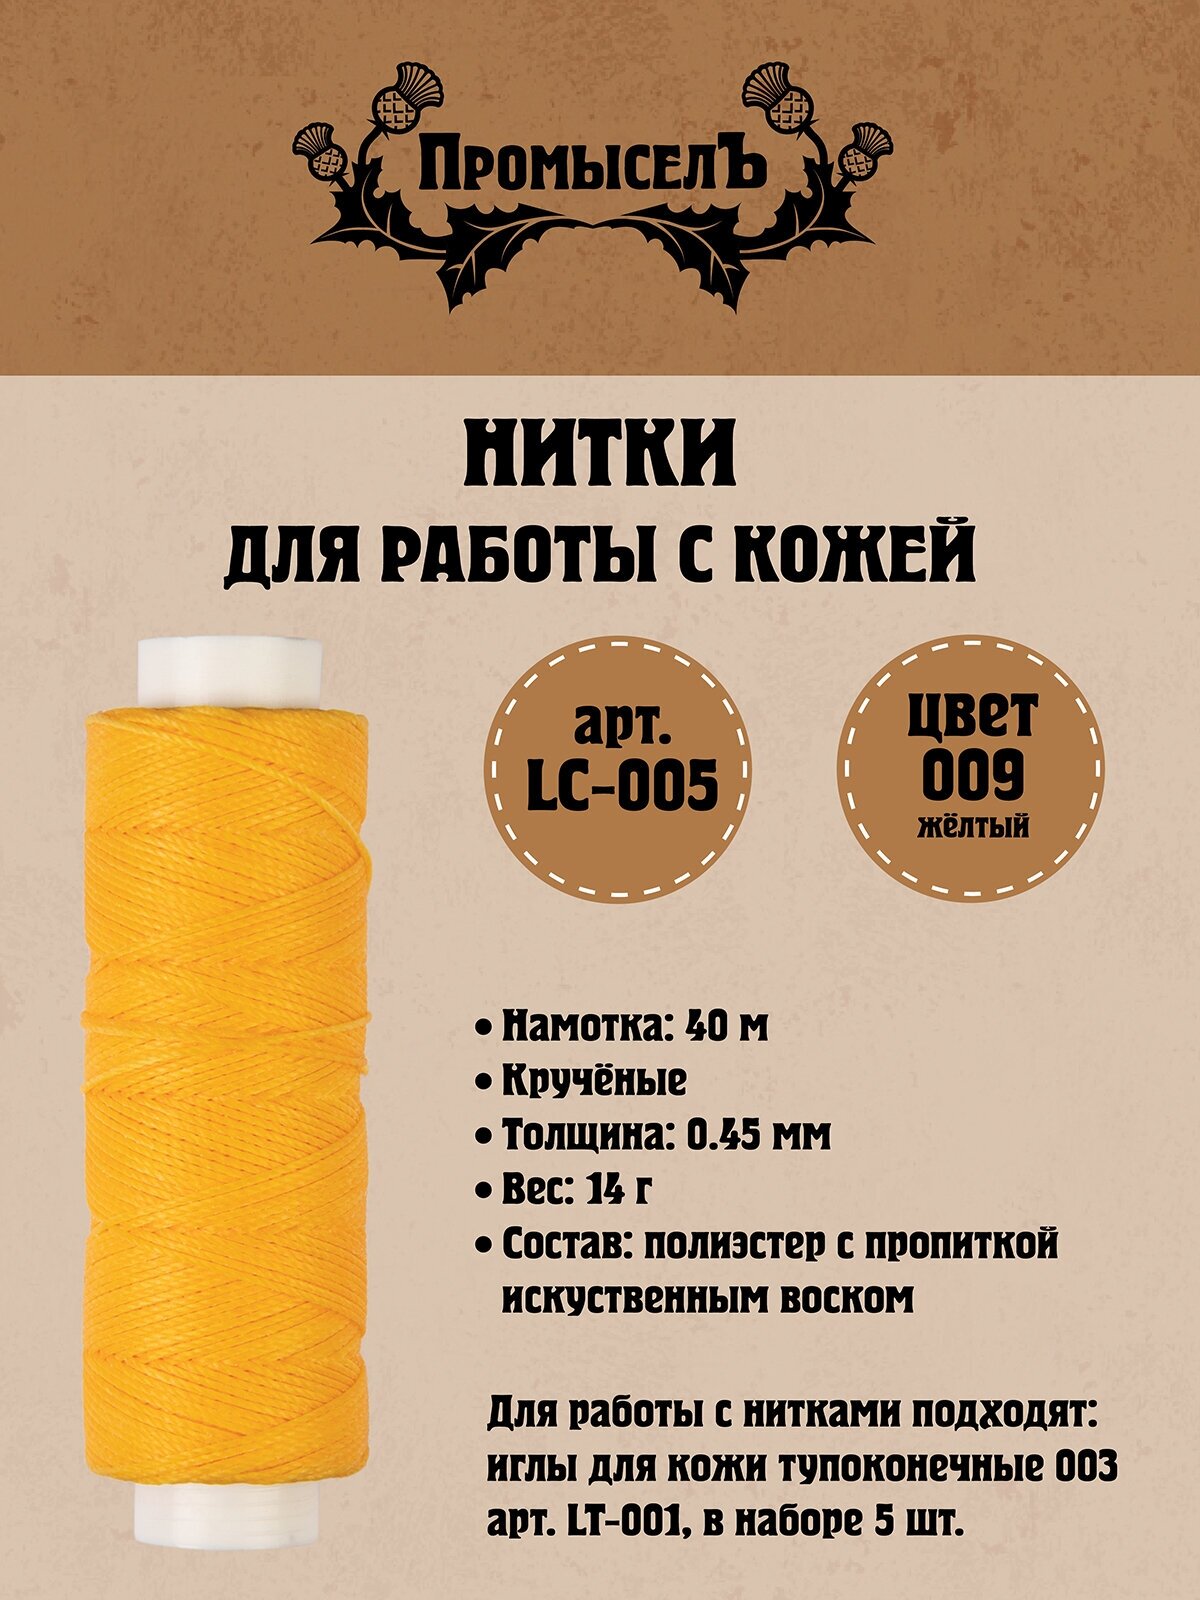 Нитки для кожи "Промысел" вощёные (полиэстер) LC-005 0.45 мм 40 м № 009 жёлтый